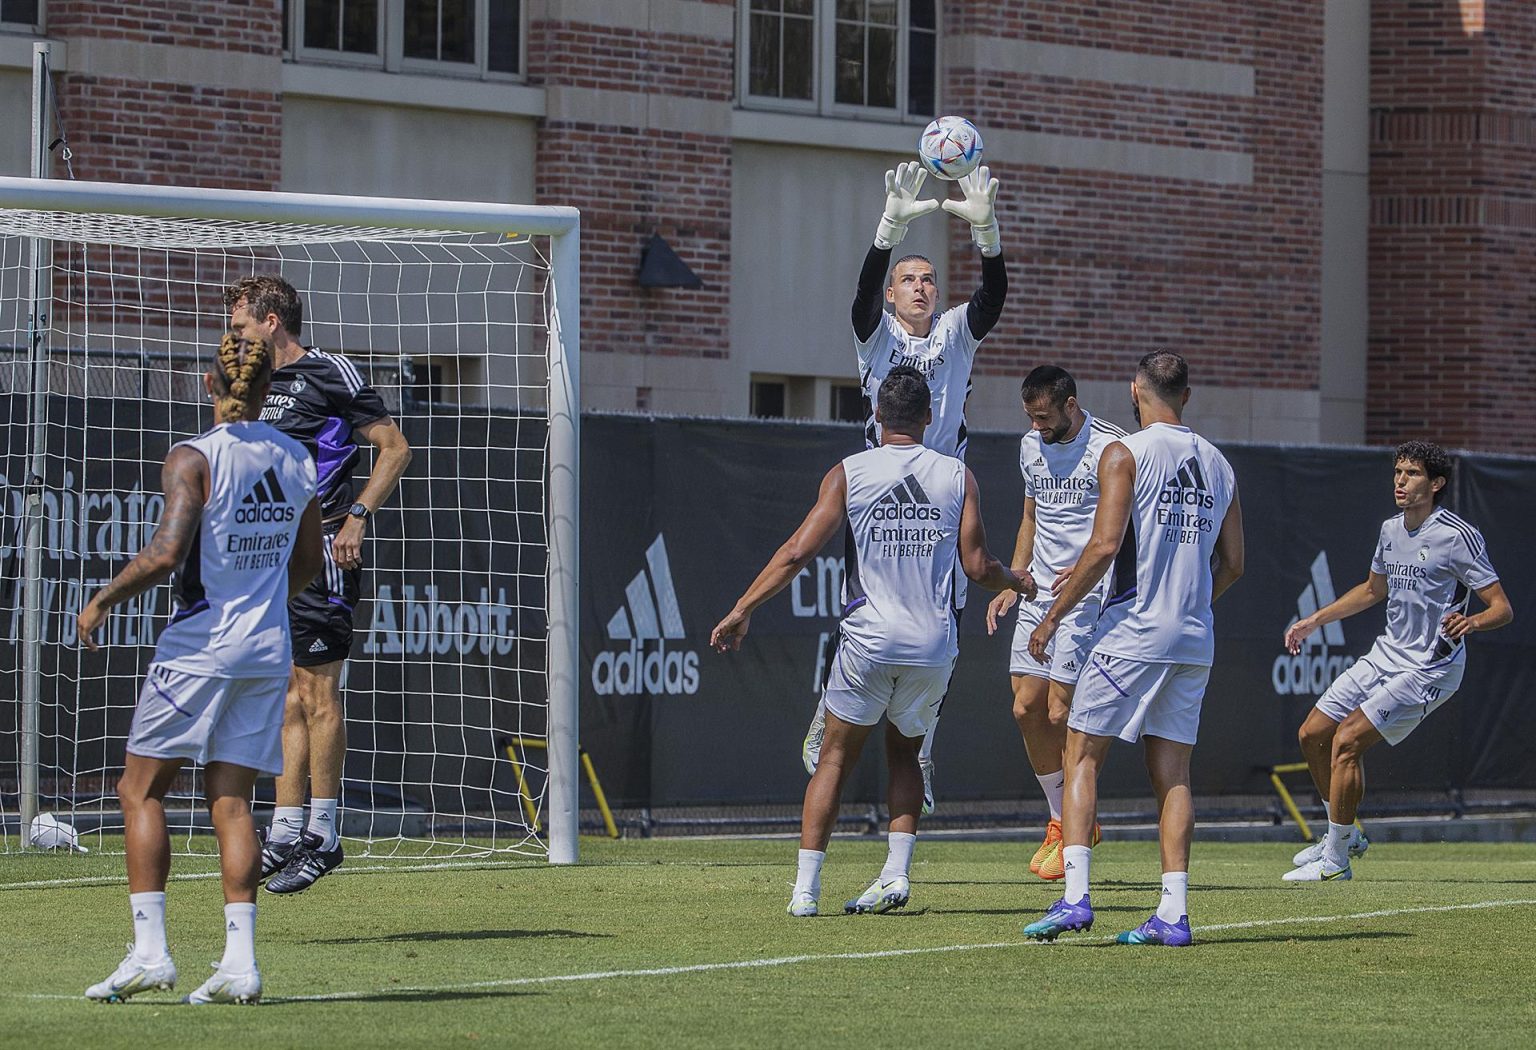 Jugadores del Real Madrid durante un entrenamiento en las instalaciones de la Universidad de California Los Ángeles (UCLA), hoy en Los Ángeles, California (EE. UU). EFE/Javier Rojas